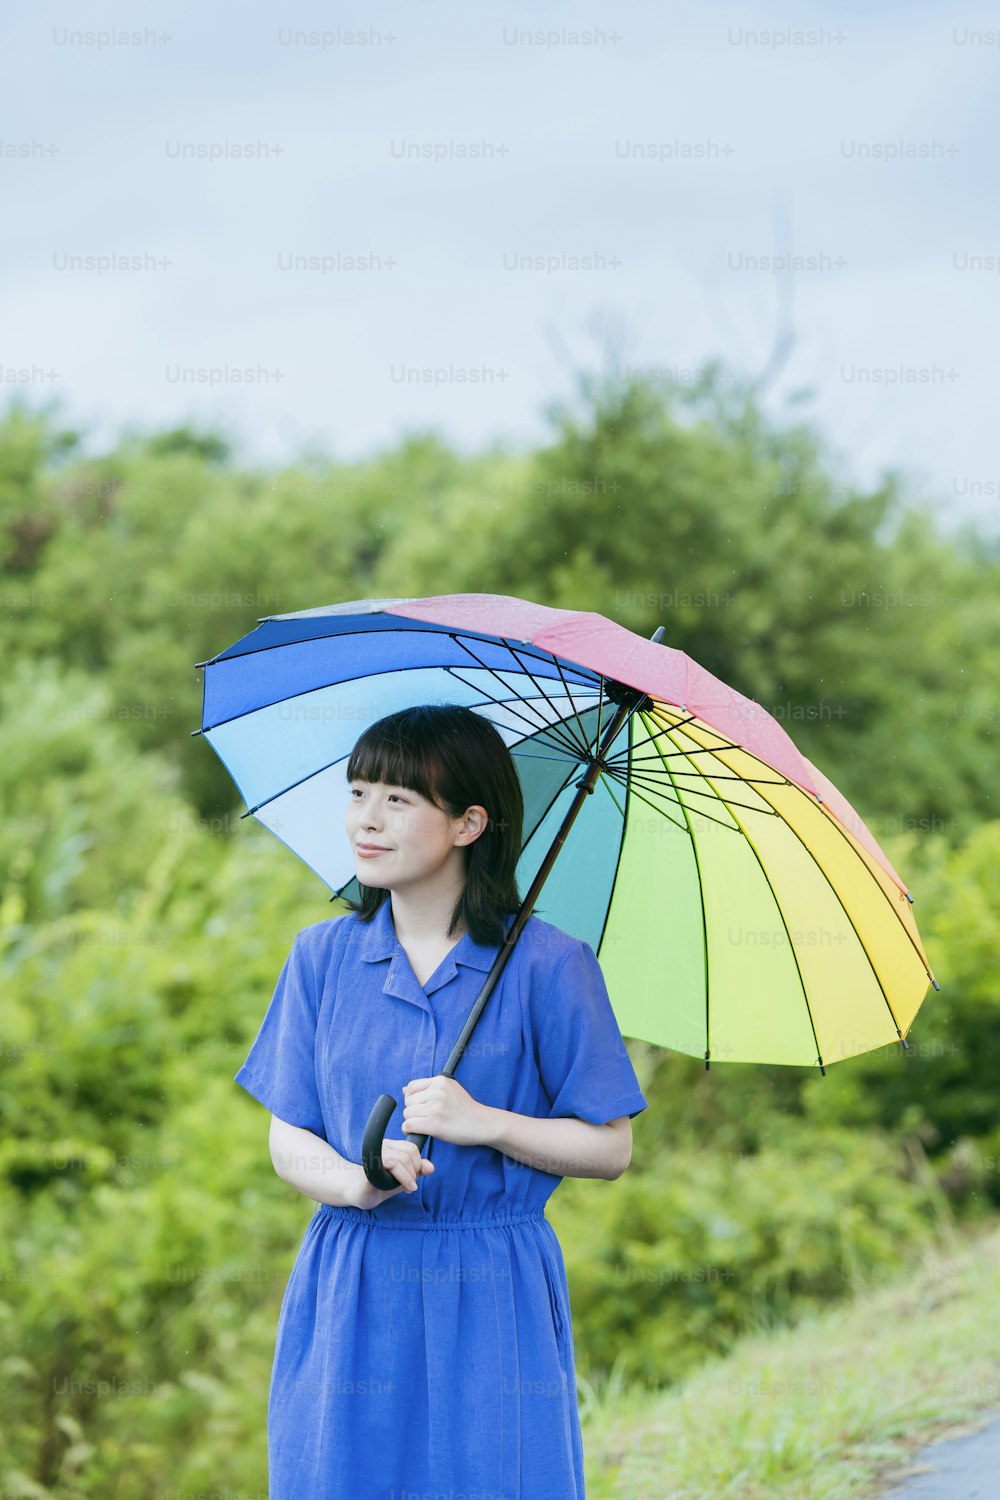 Eine Frau, die einen bunten Regenschirm im Regen hält